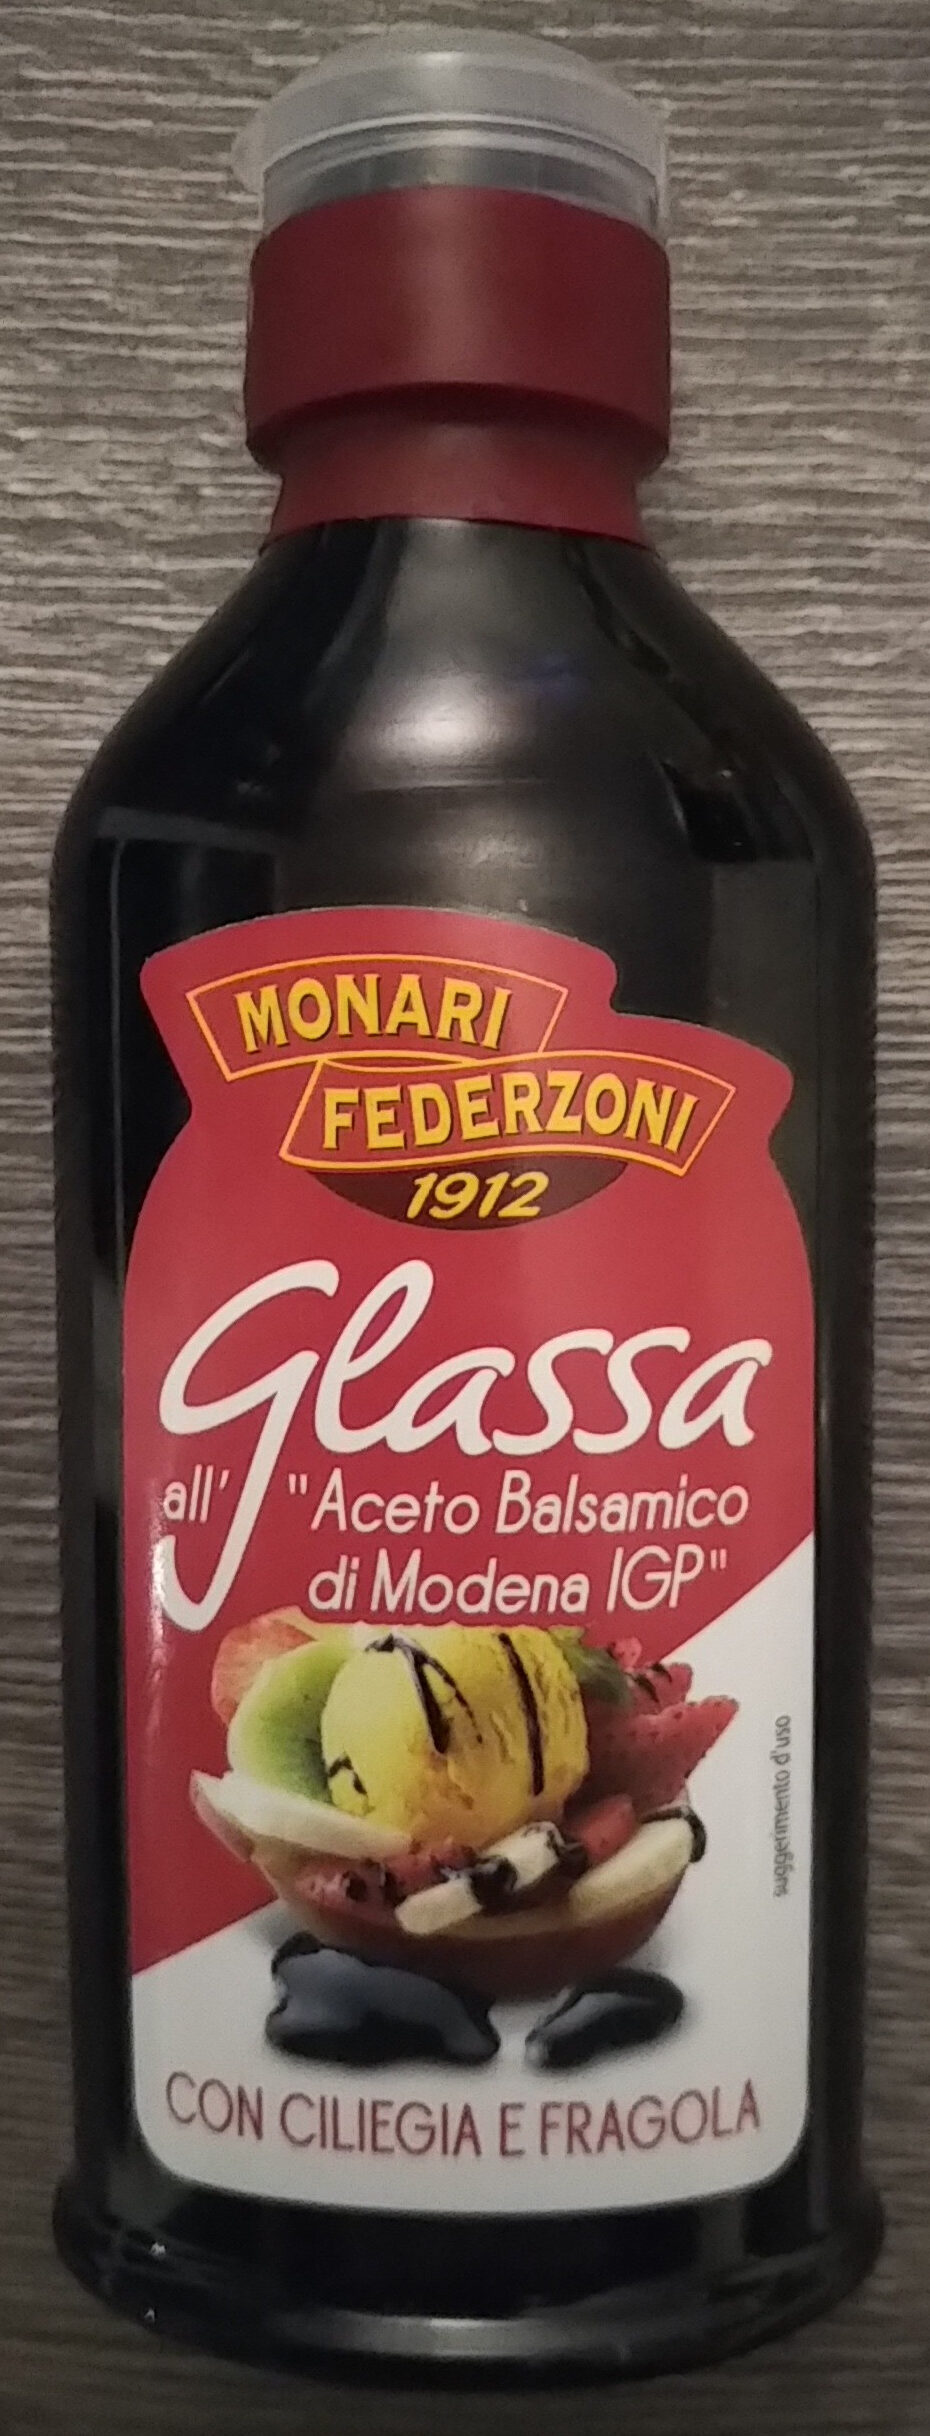 Glassa all'"aceto balsamico di Modena IGP" con ciliegia e fragola - Product - it